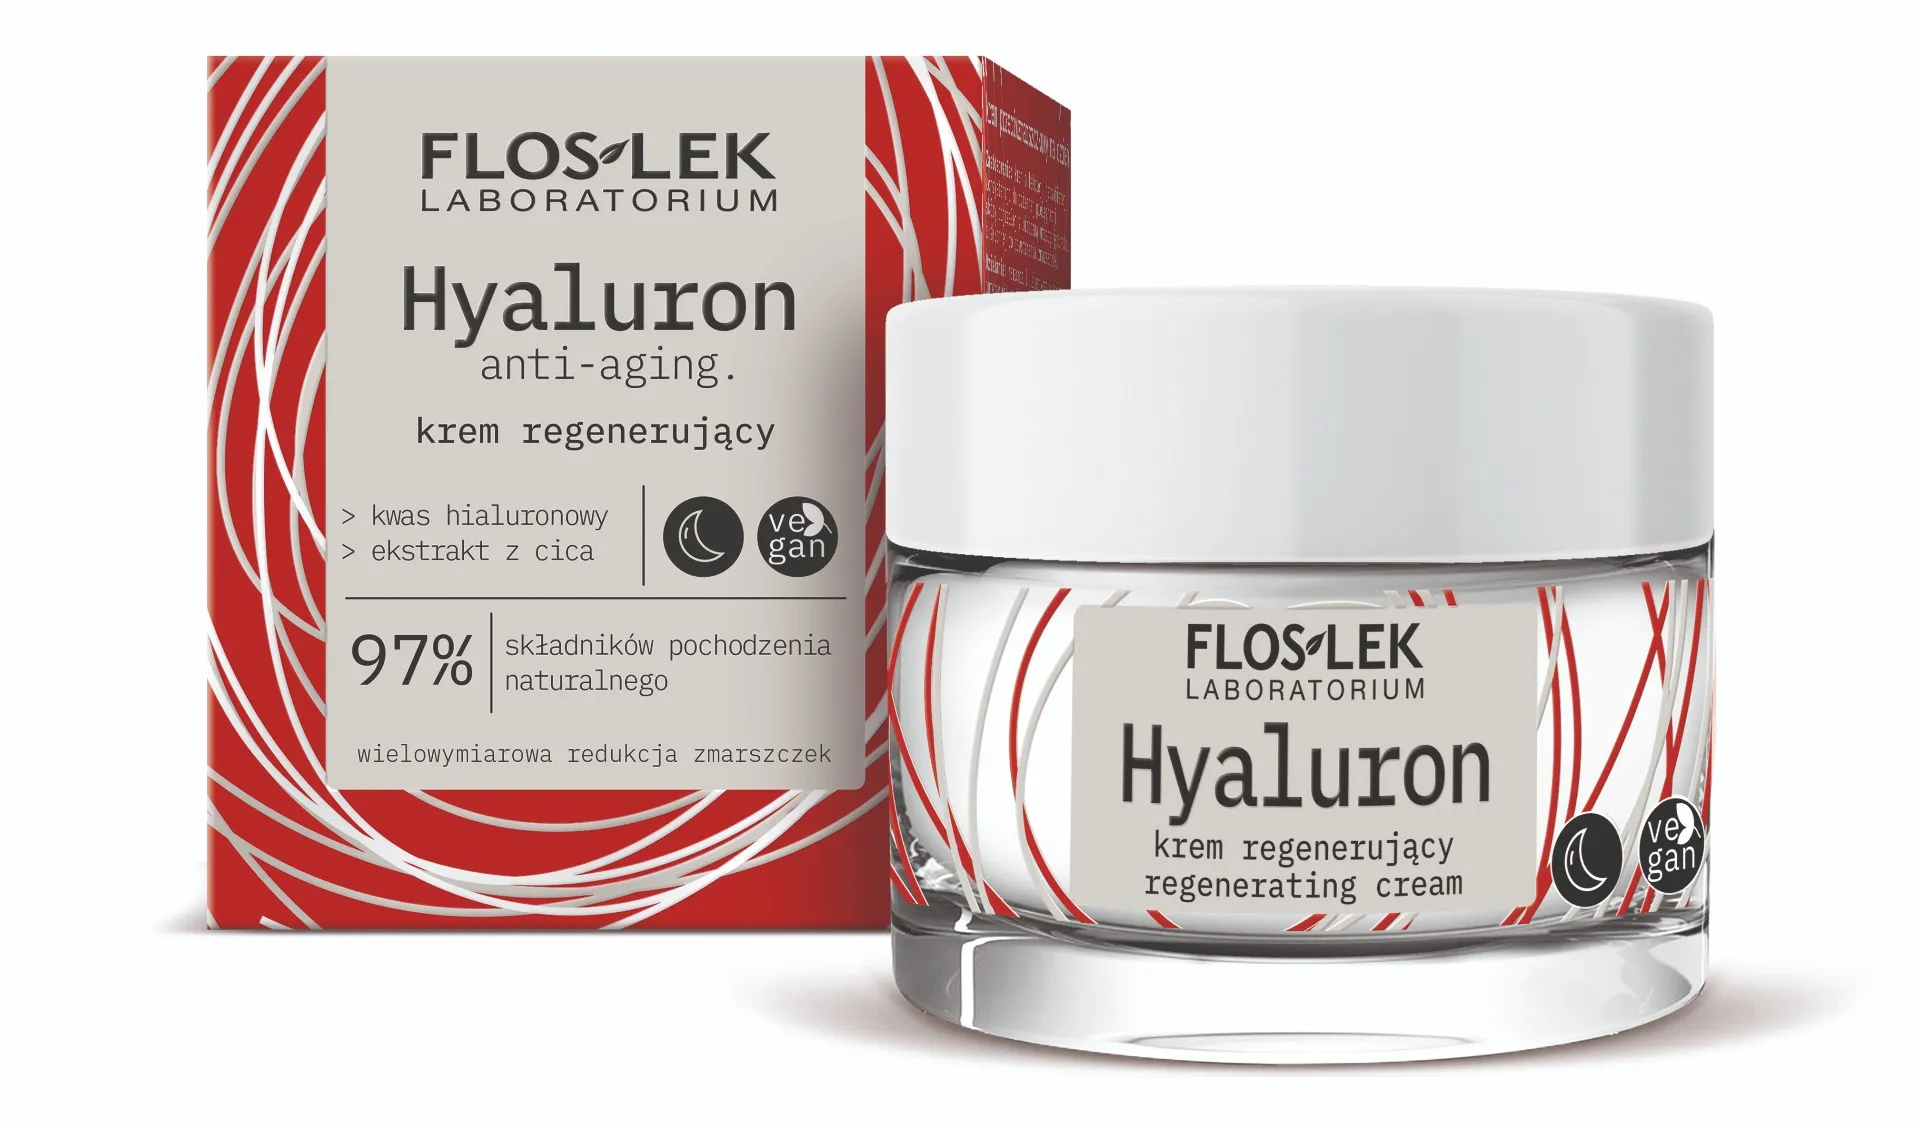 Flos-Lek Hyaluron, krem regenerujący na noc, 50 ml